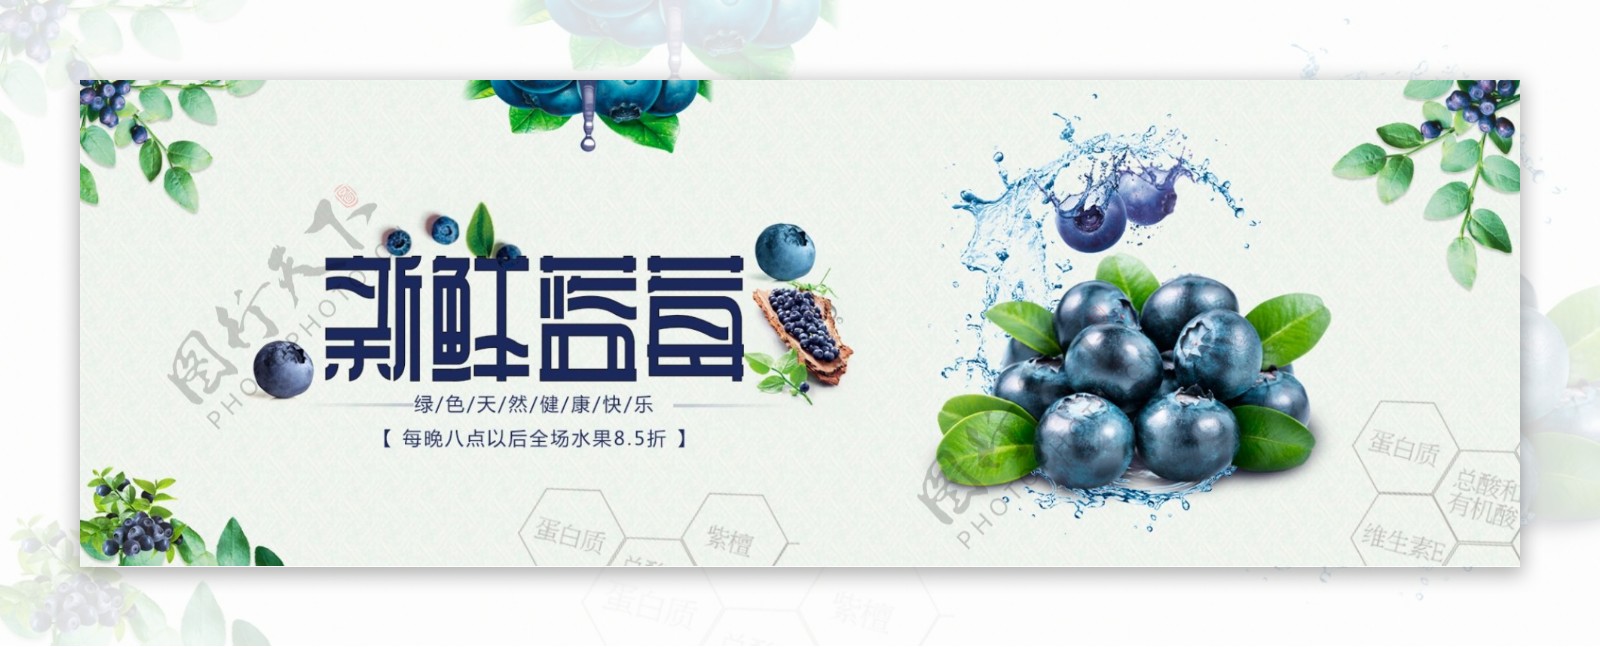 水果蓝莓淘宝海报